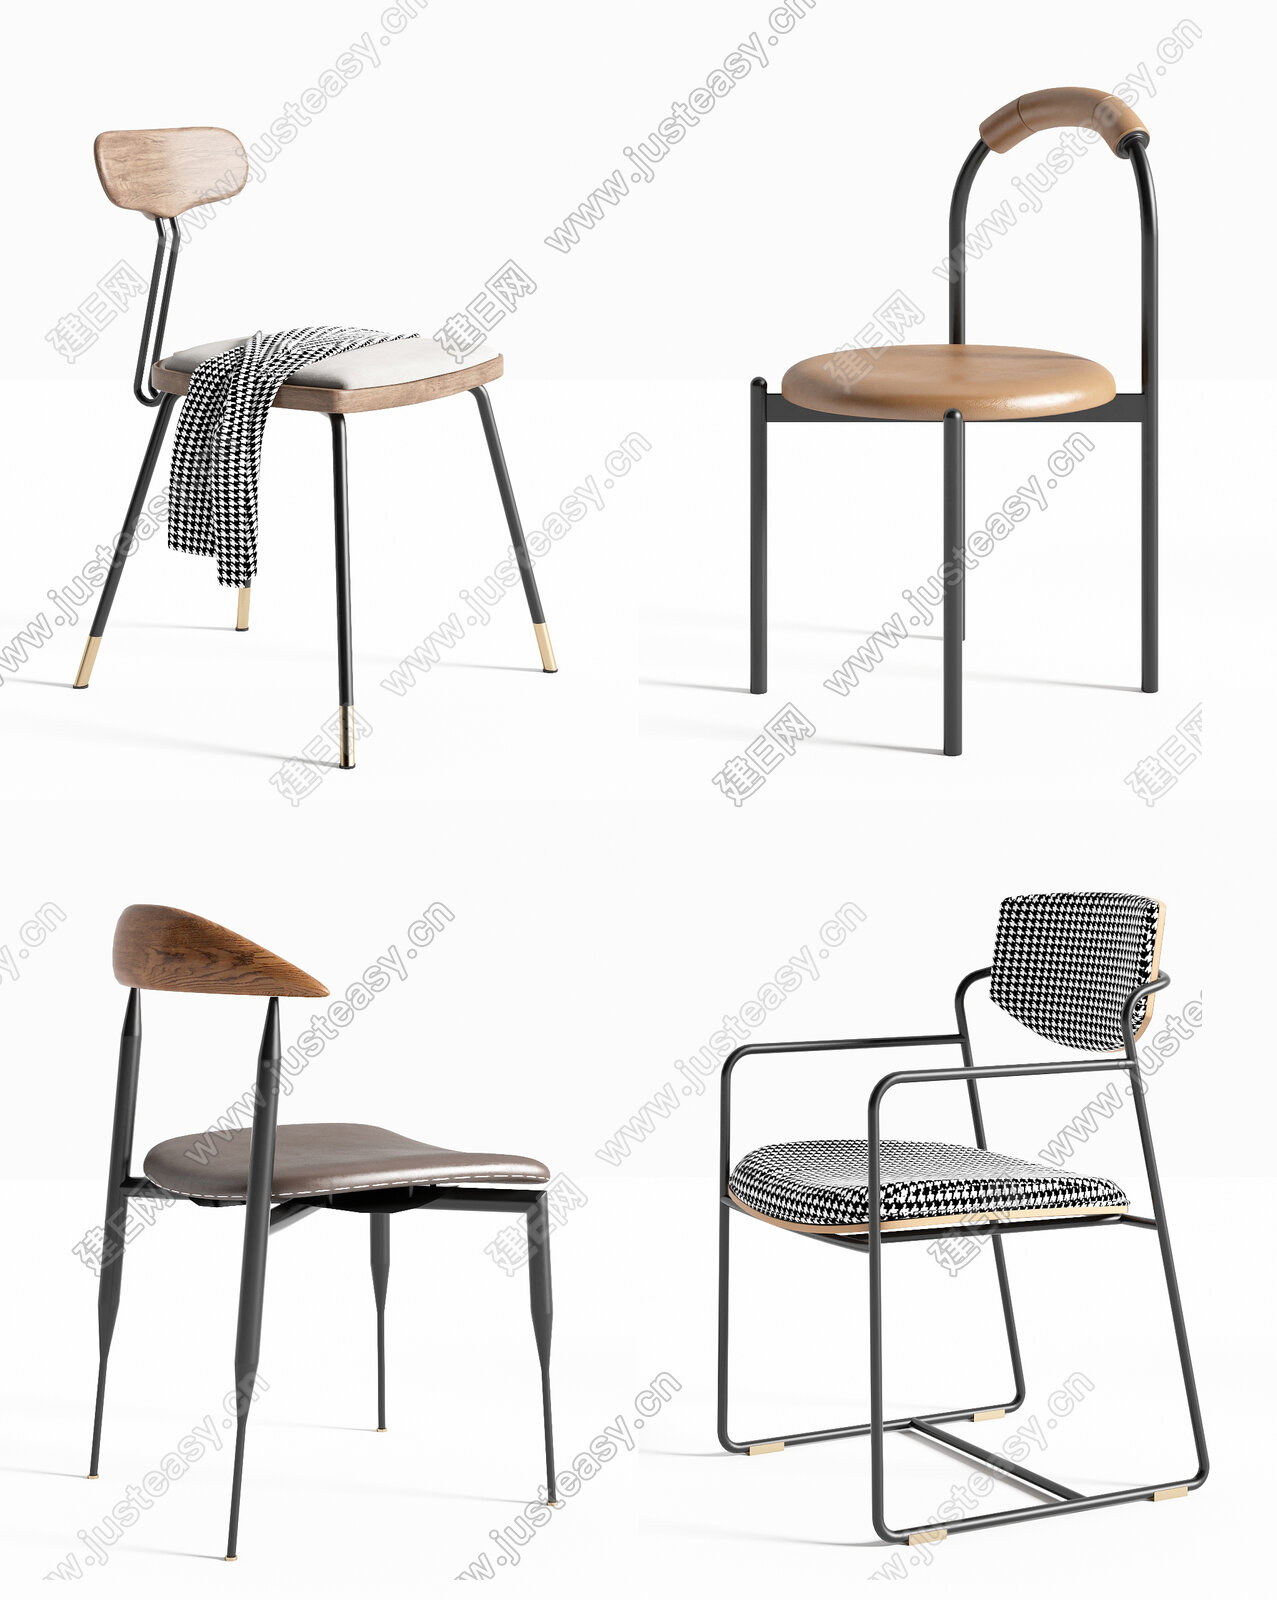 北欧铁艺餐椅组合3d模型